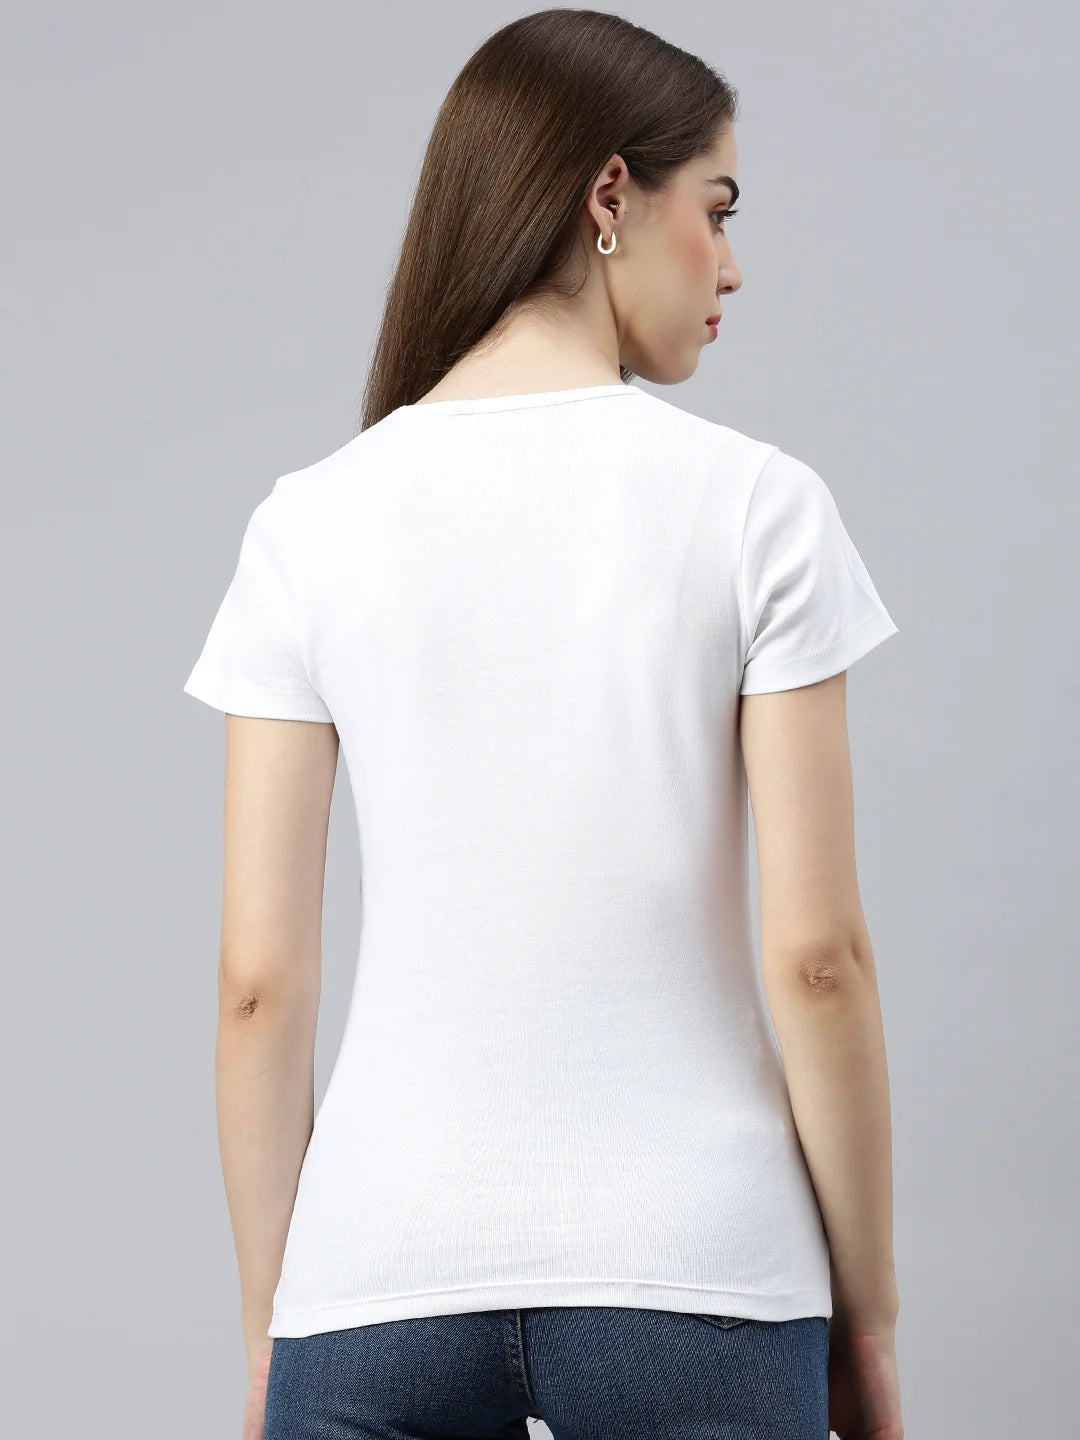 maglietta donna-efia-cotone-scollo a V-bianco-indietro